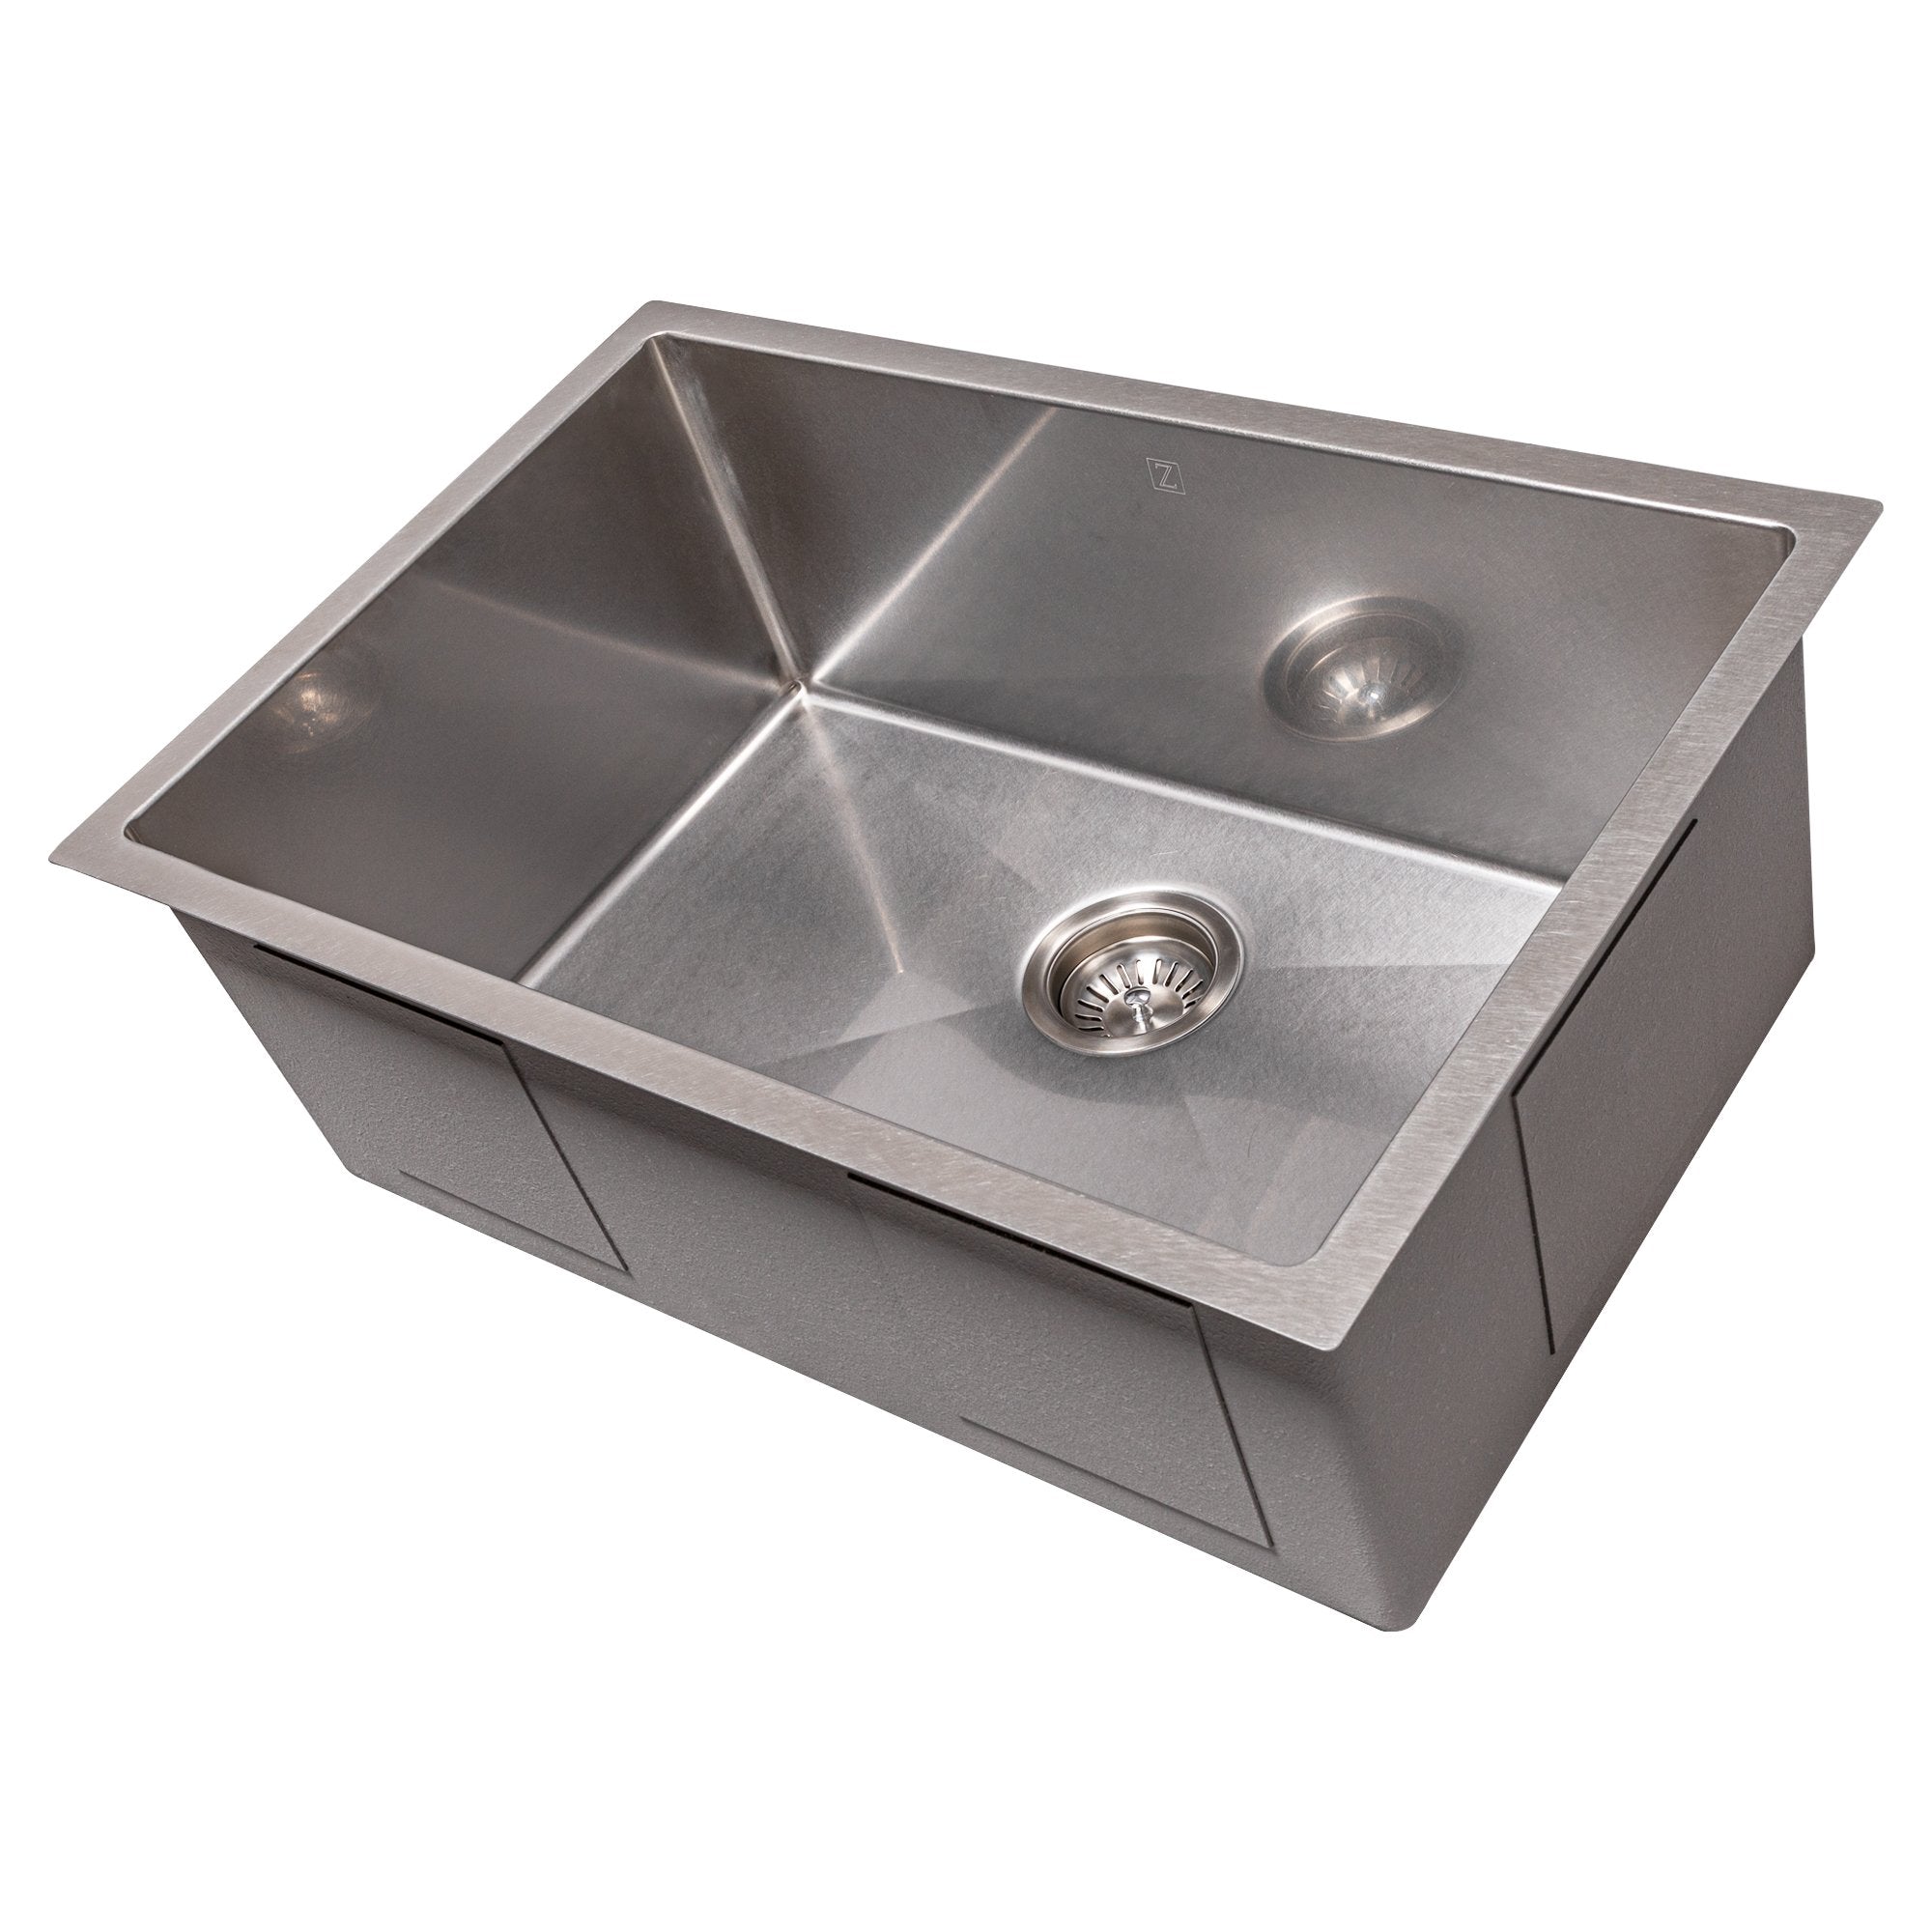 ZLINE 27" Meribel Undermount Single Bowl Stainless Steel Kitchen Sink with Bottom Grid (SRS-27)